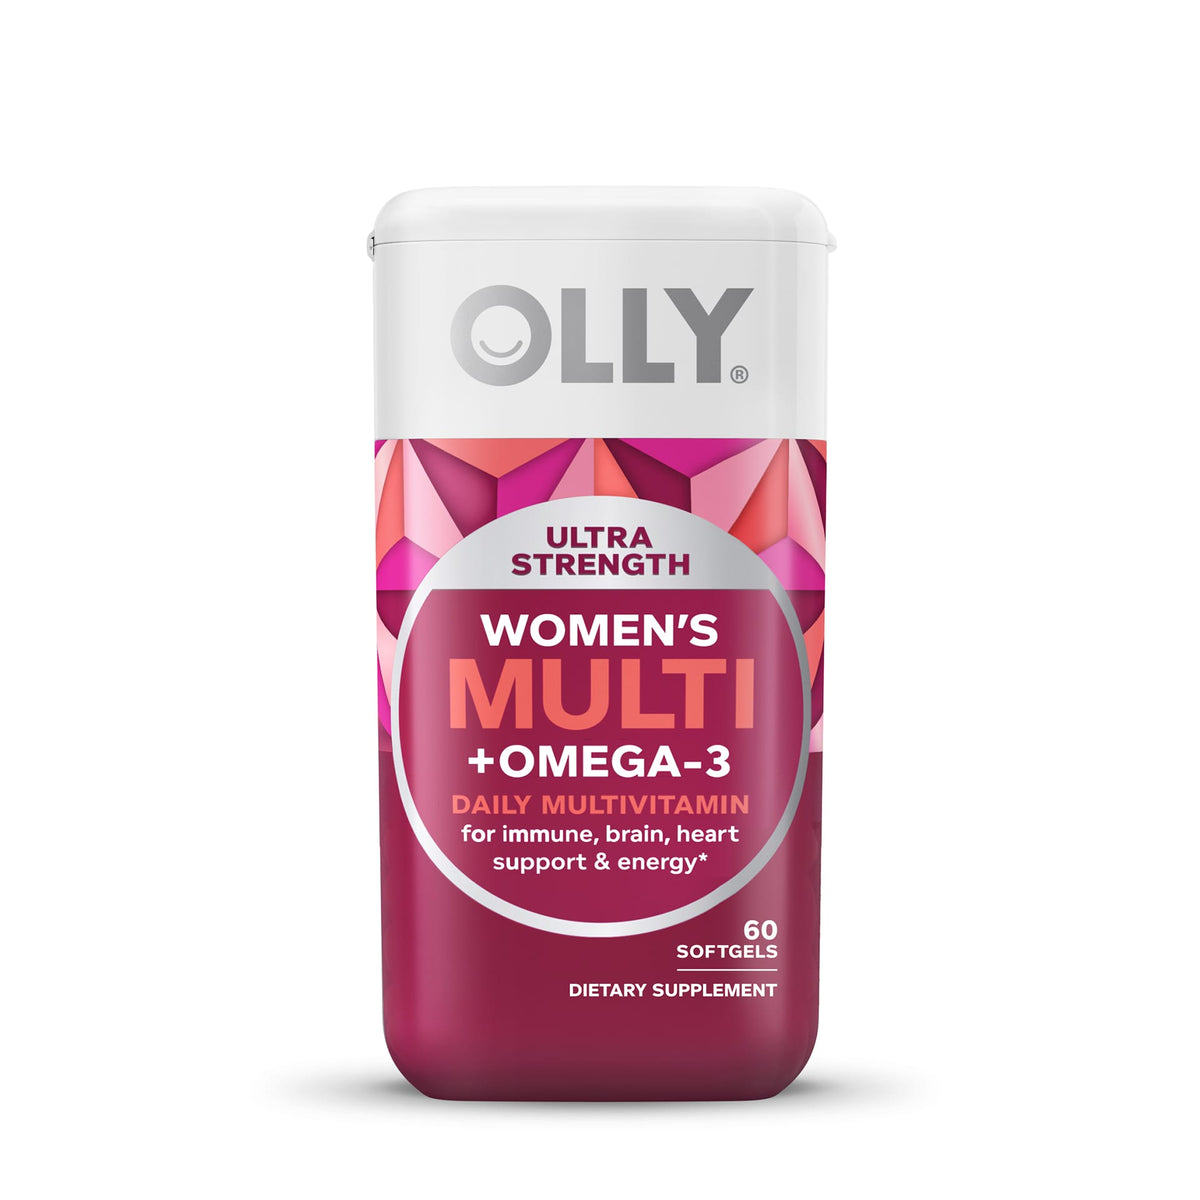 Ultra Strength Women's Multi + Omega-3 Softgels